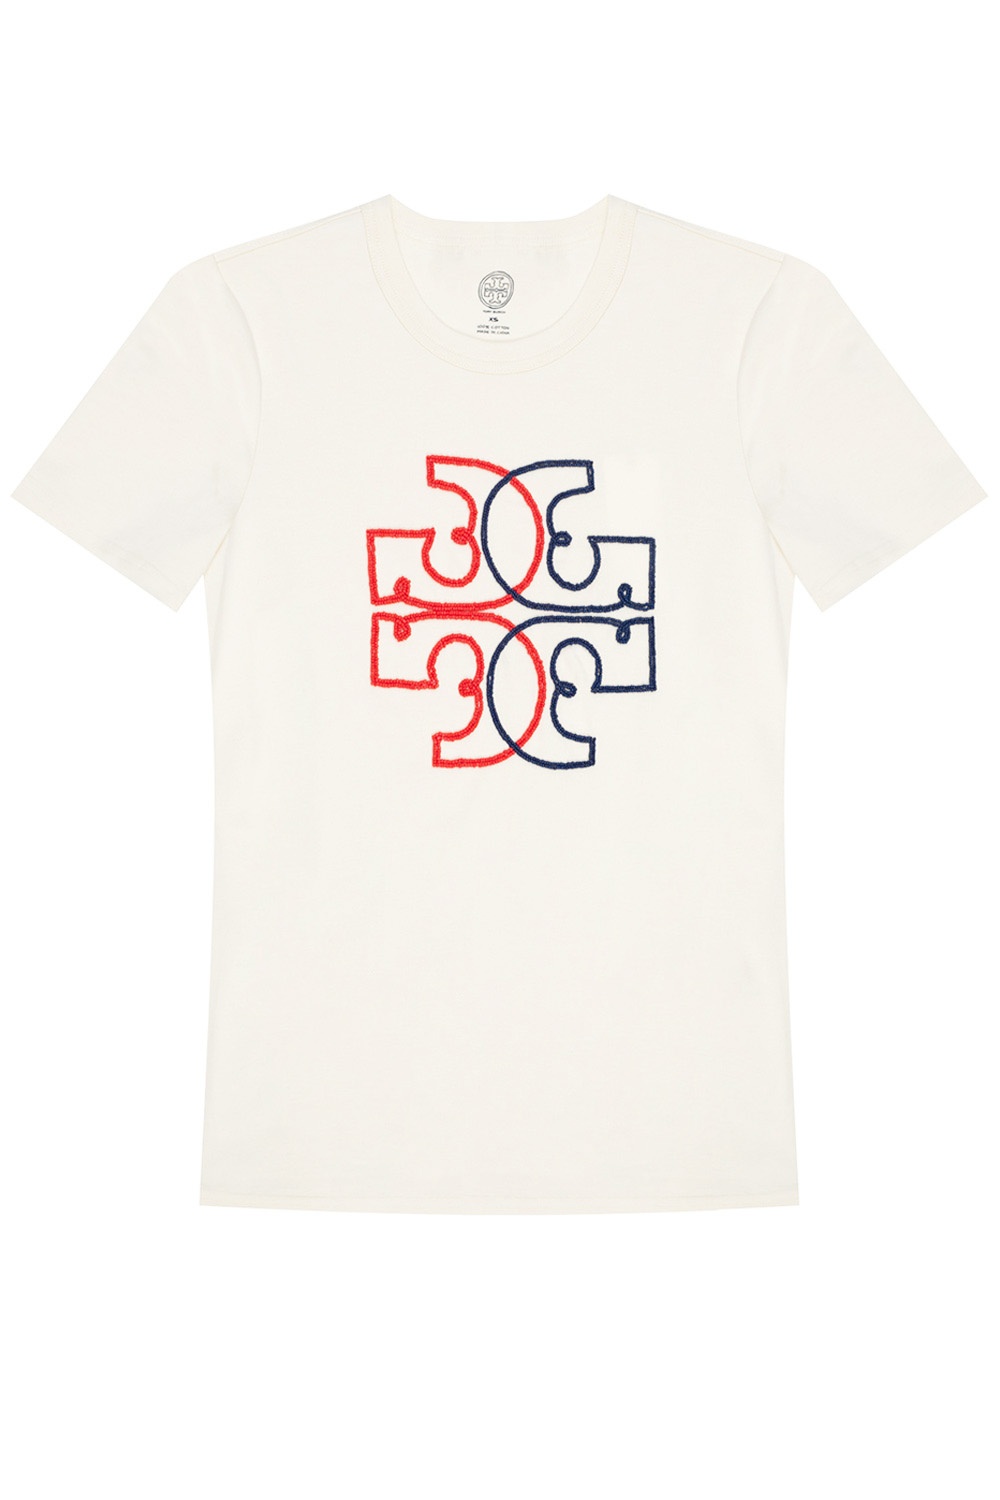 Tory Burch Logo T-shirt | Women's ...